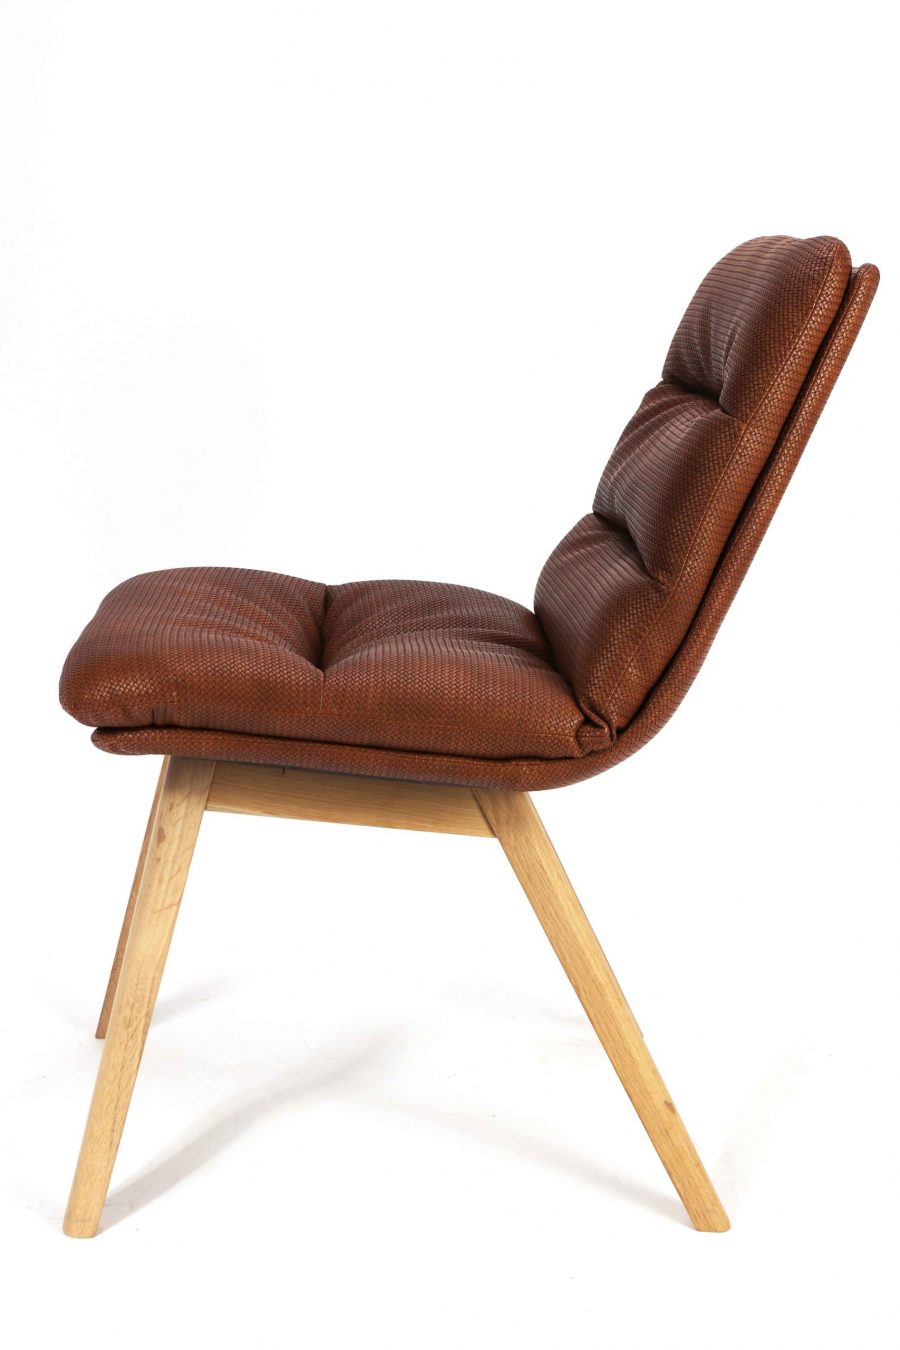 Krzesło Johan wooden legs